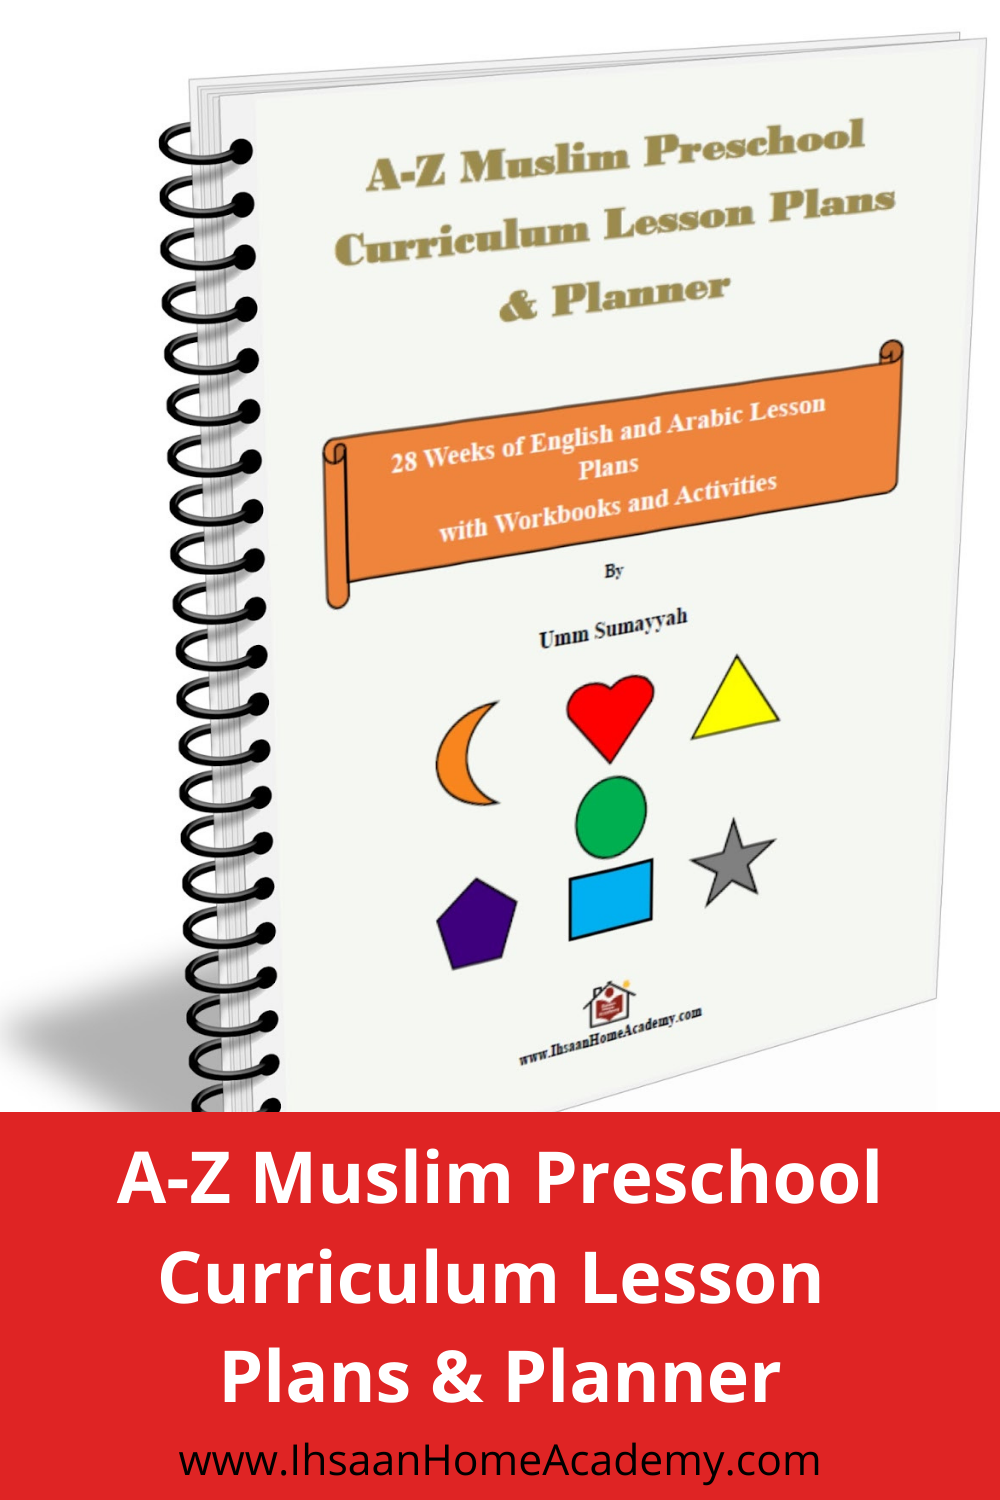 Complete Preschool Curriculum